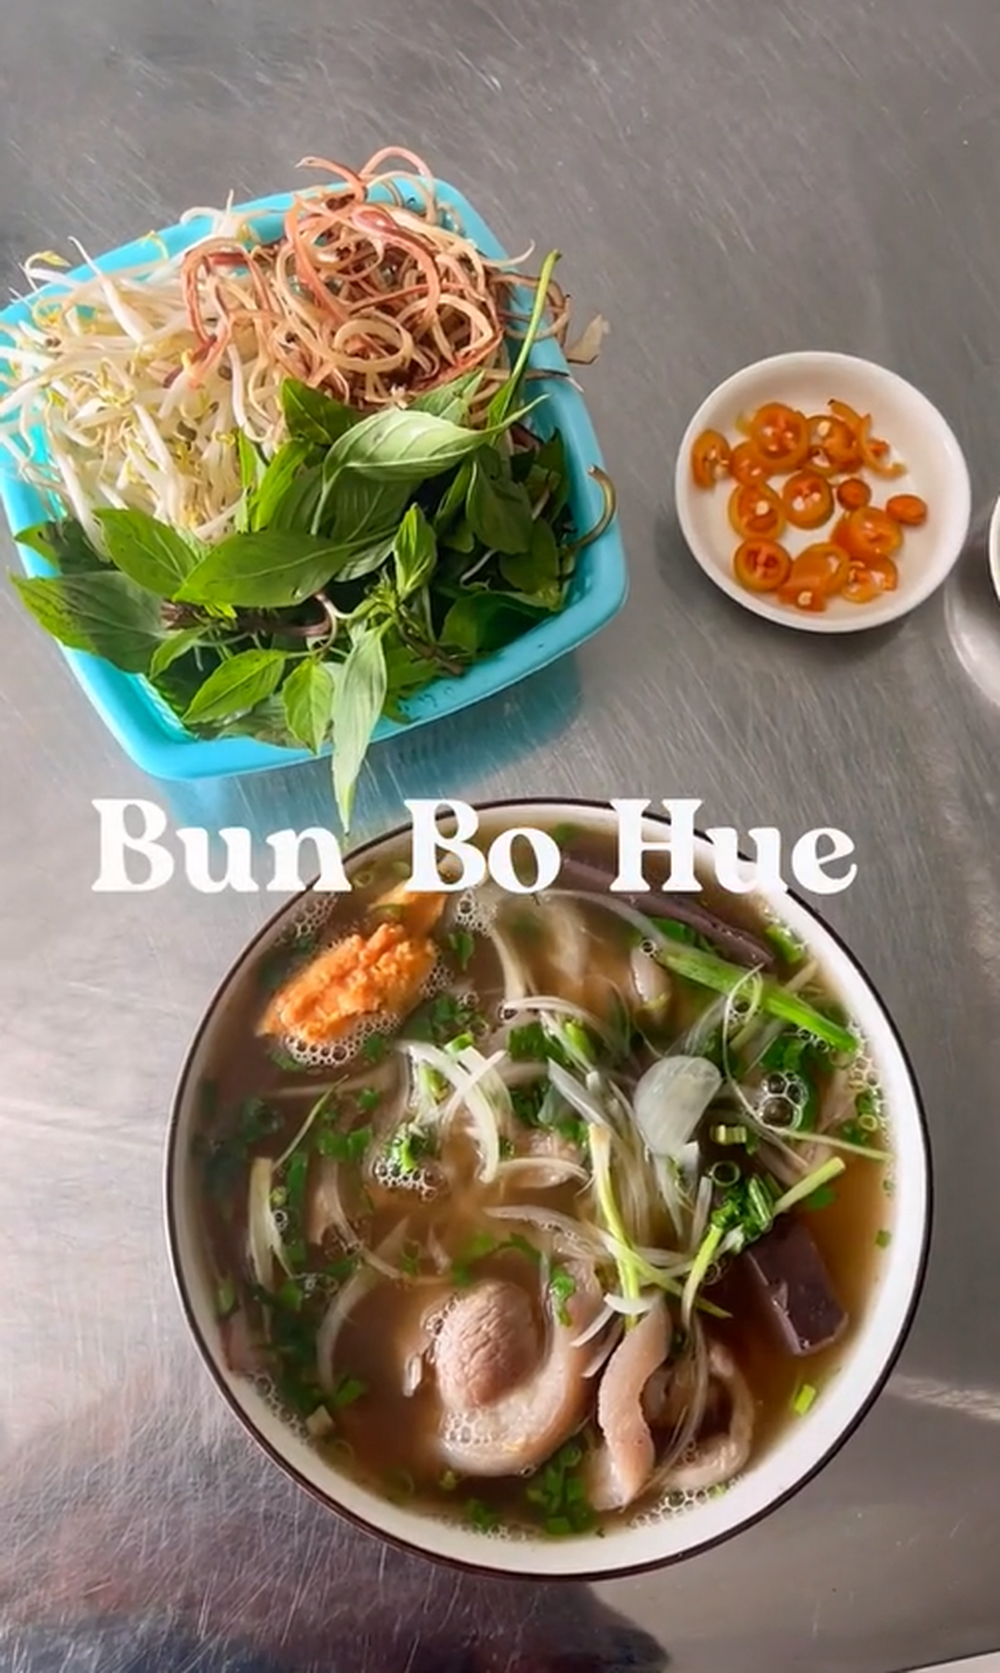 Khách nước ngoài lựa chọn 4 món từ sợi tuyệt nhất trong ẩm thực Việt - ảnh 7